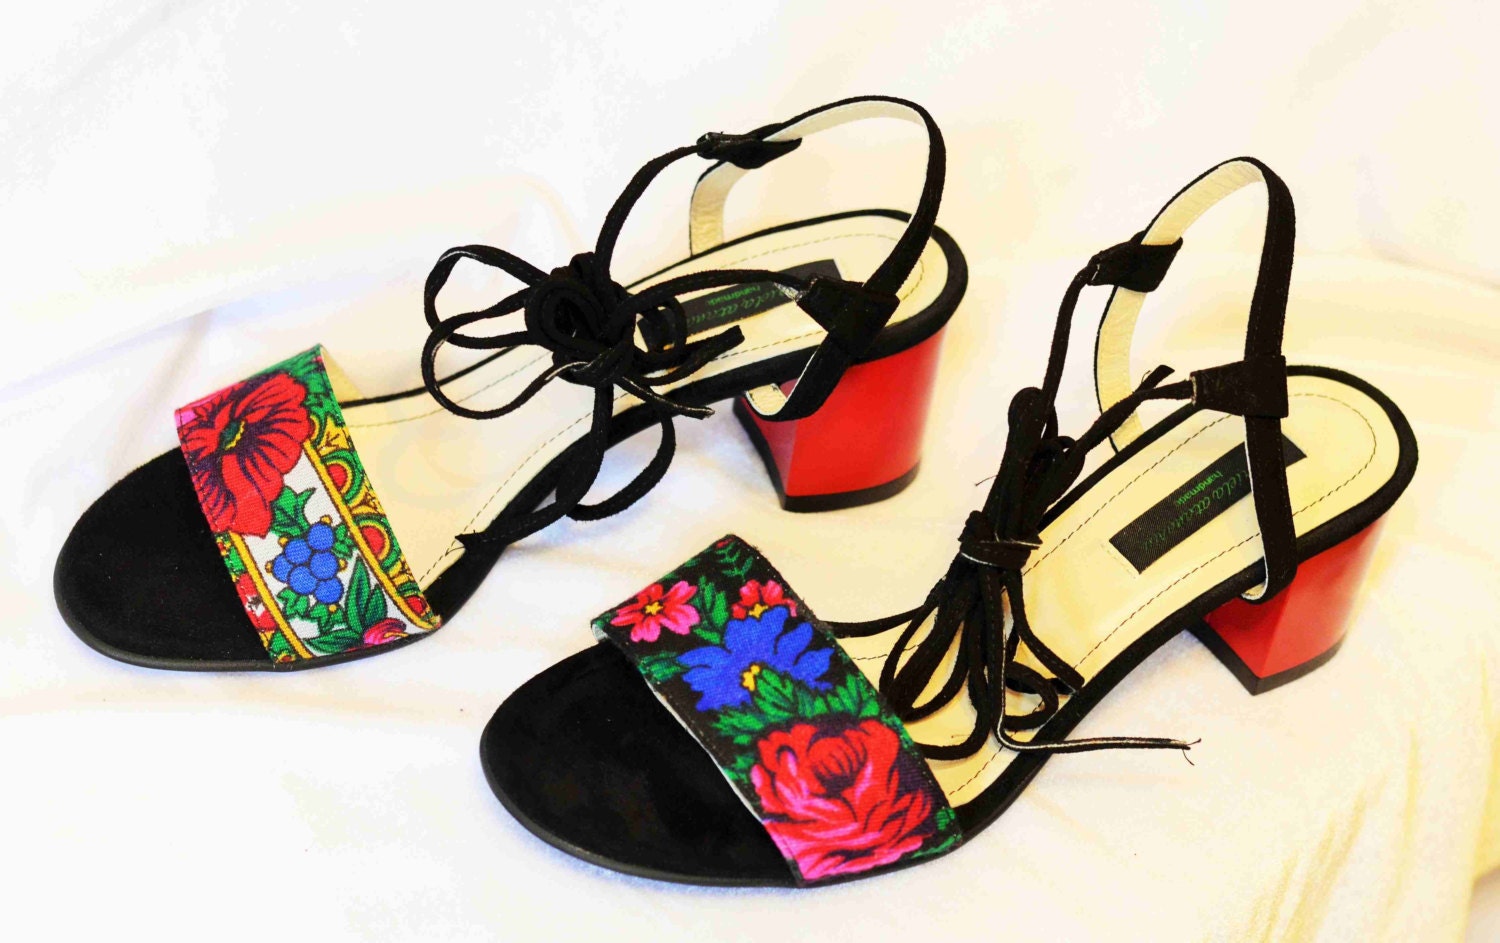 SALE last pair size 5 US/ 36 European Flower Sandals 1970